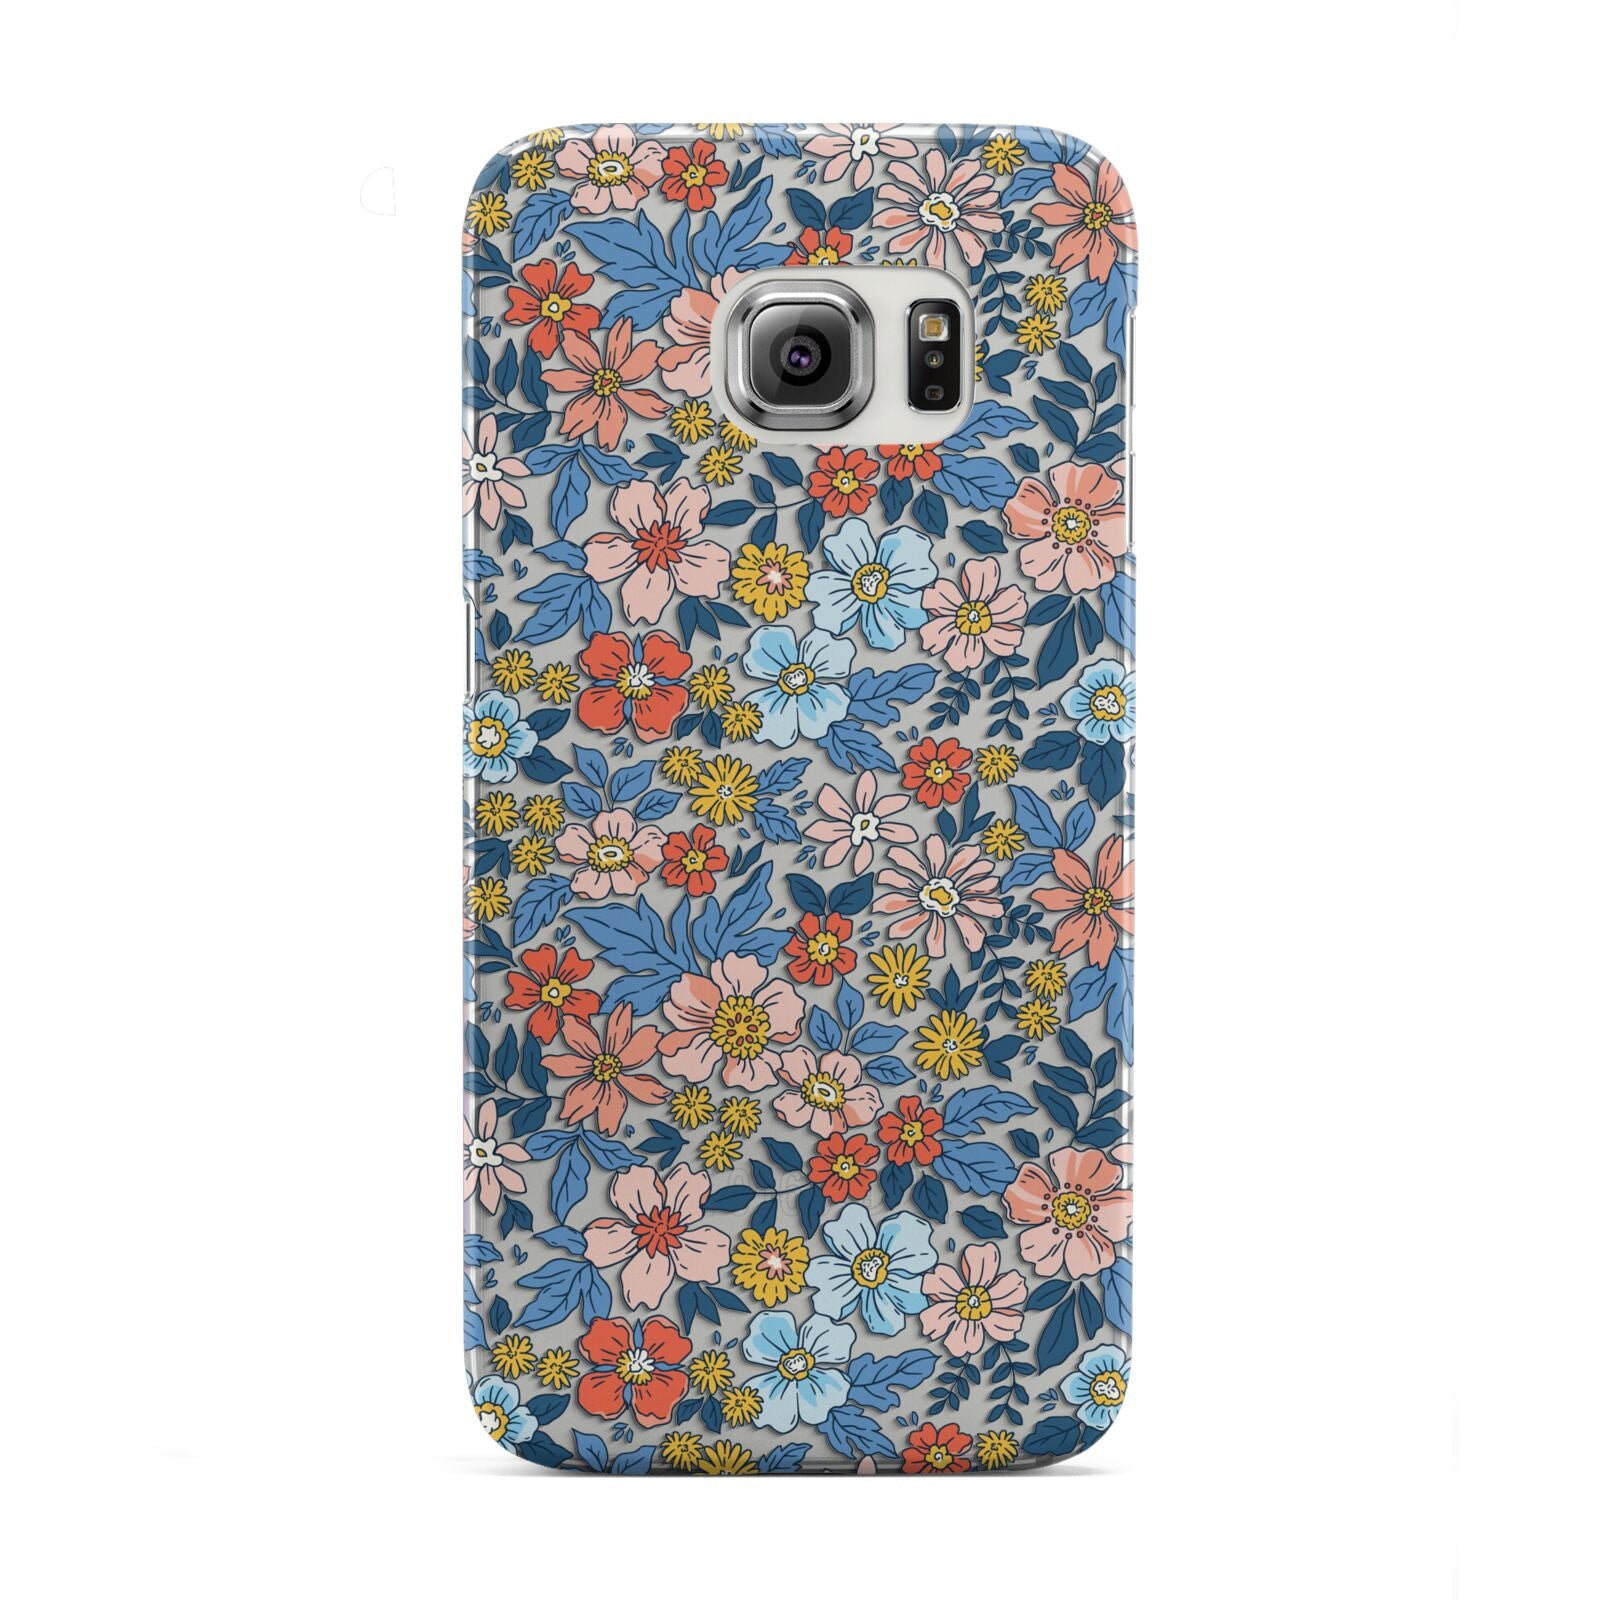 Vintage Flower Samsung Galaxy S6 Edge Case